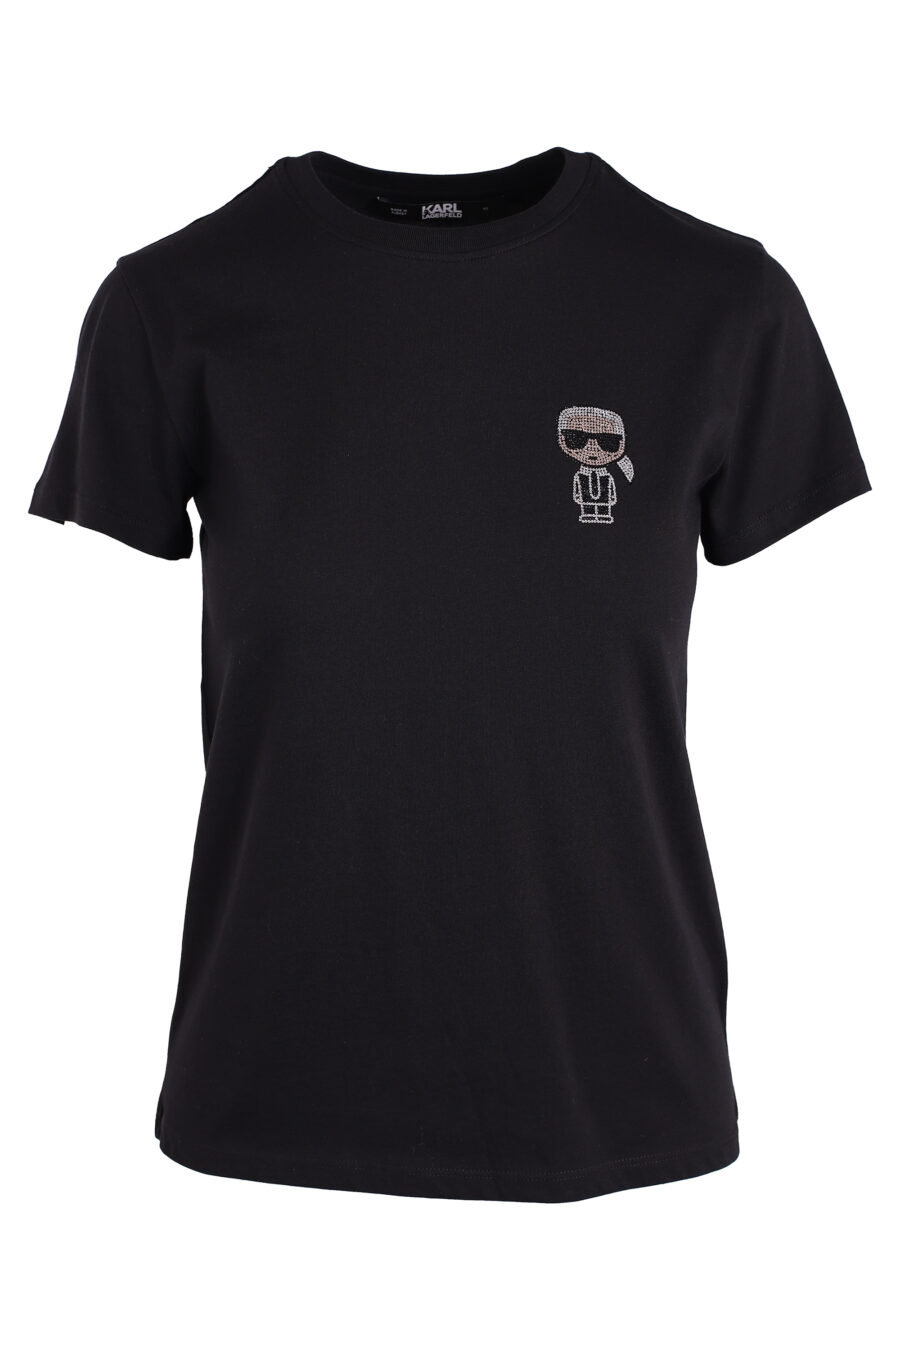 Camiseta negra con logo mini "karl" en strass - IMG 3362